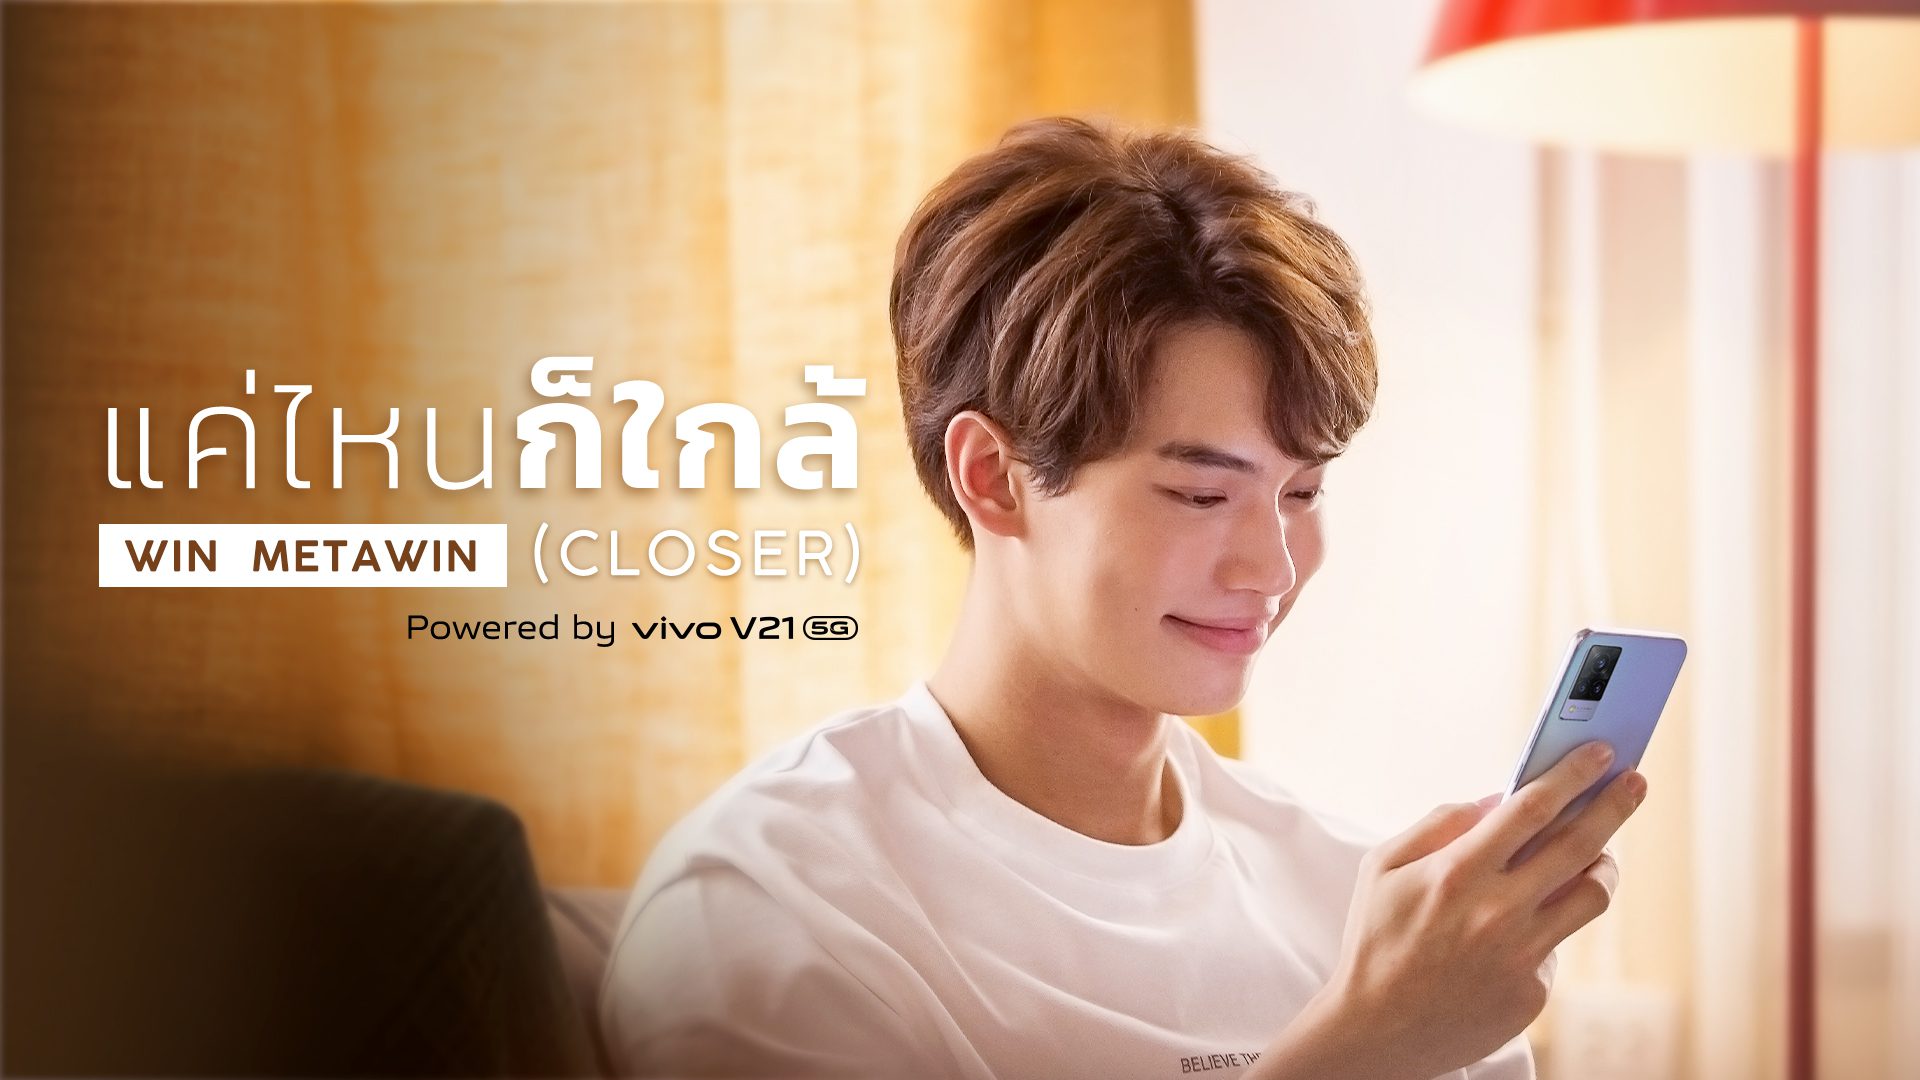 Vivo V21 5G ควงหนุ่ม ‘วิน-เมธวิน’ ปล่อย MV สุดพิเศษ ประกอบเพลง ‘แค่ไหนก็ใกล้ (CLOSER)’ รับชมได้แล้ววันนี้!